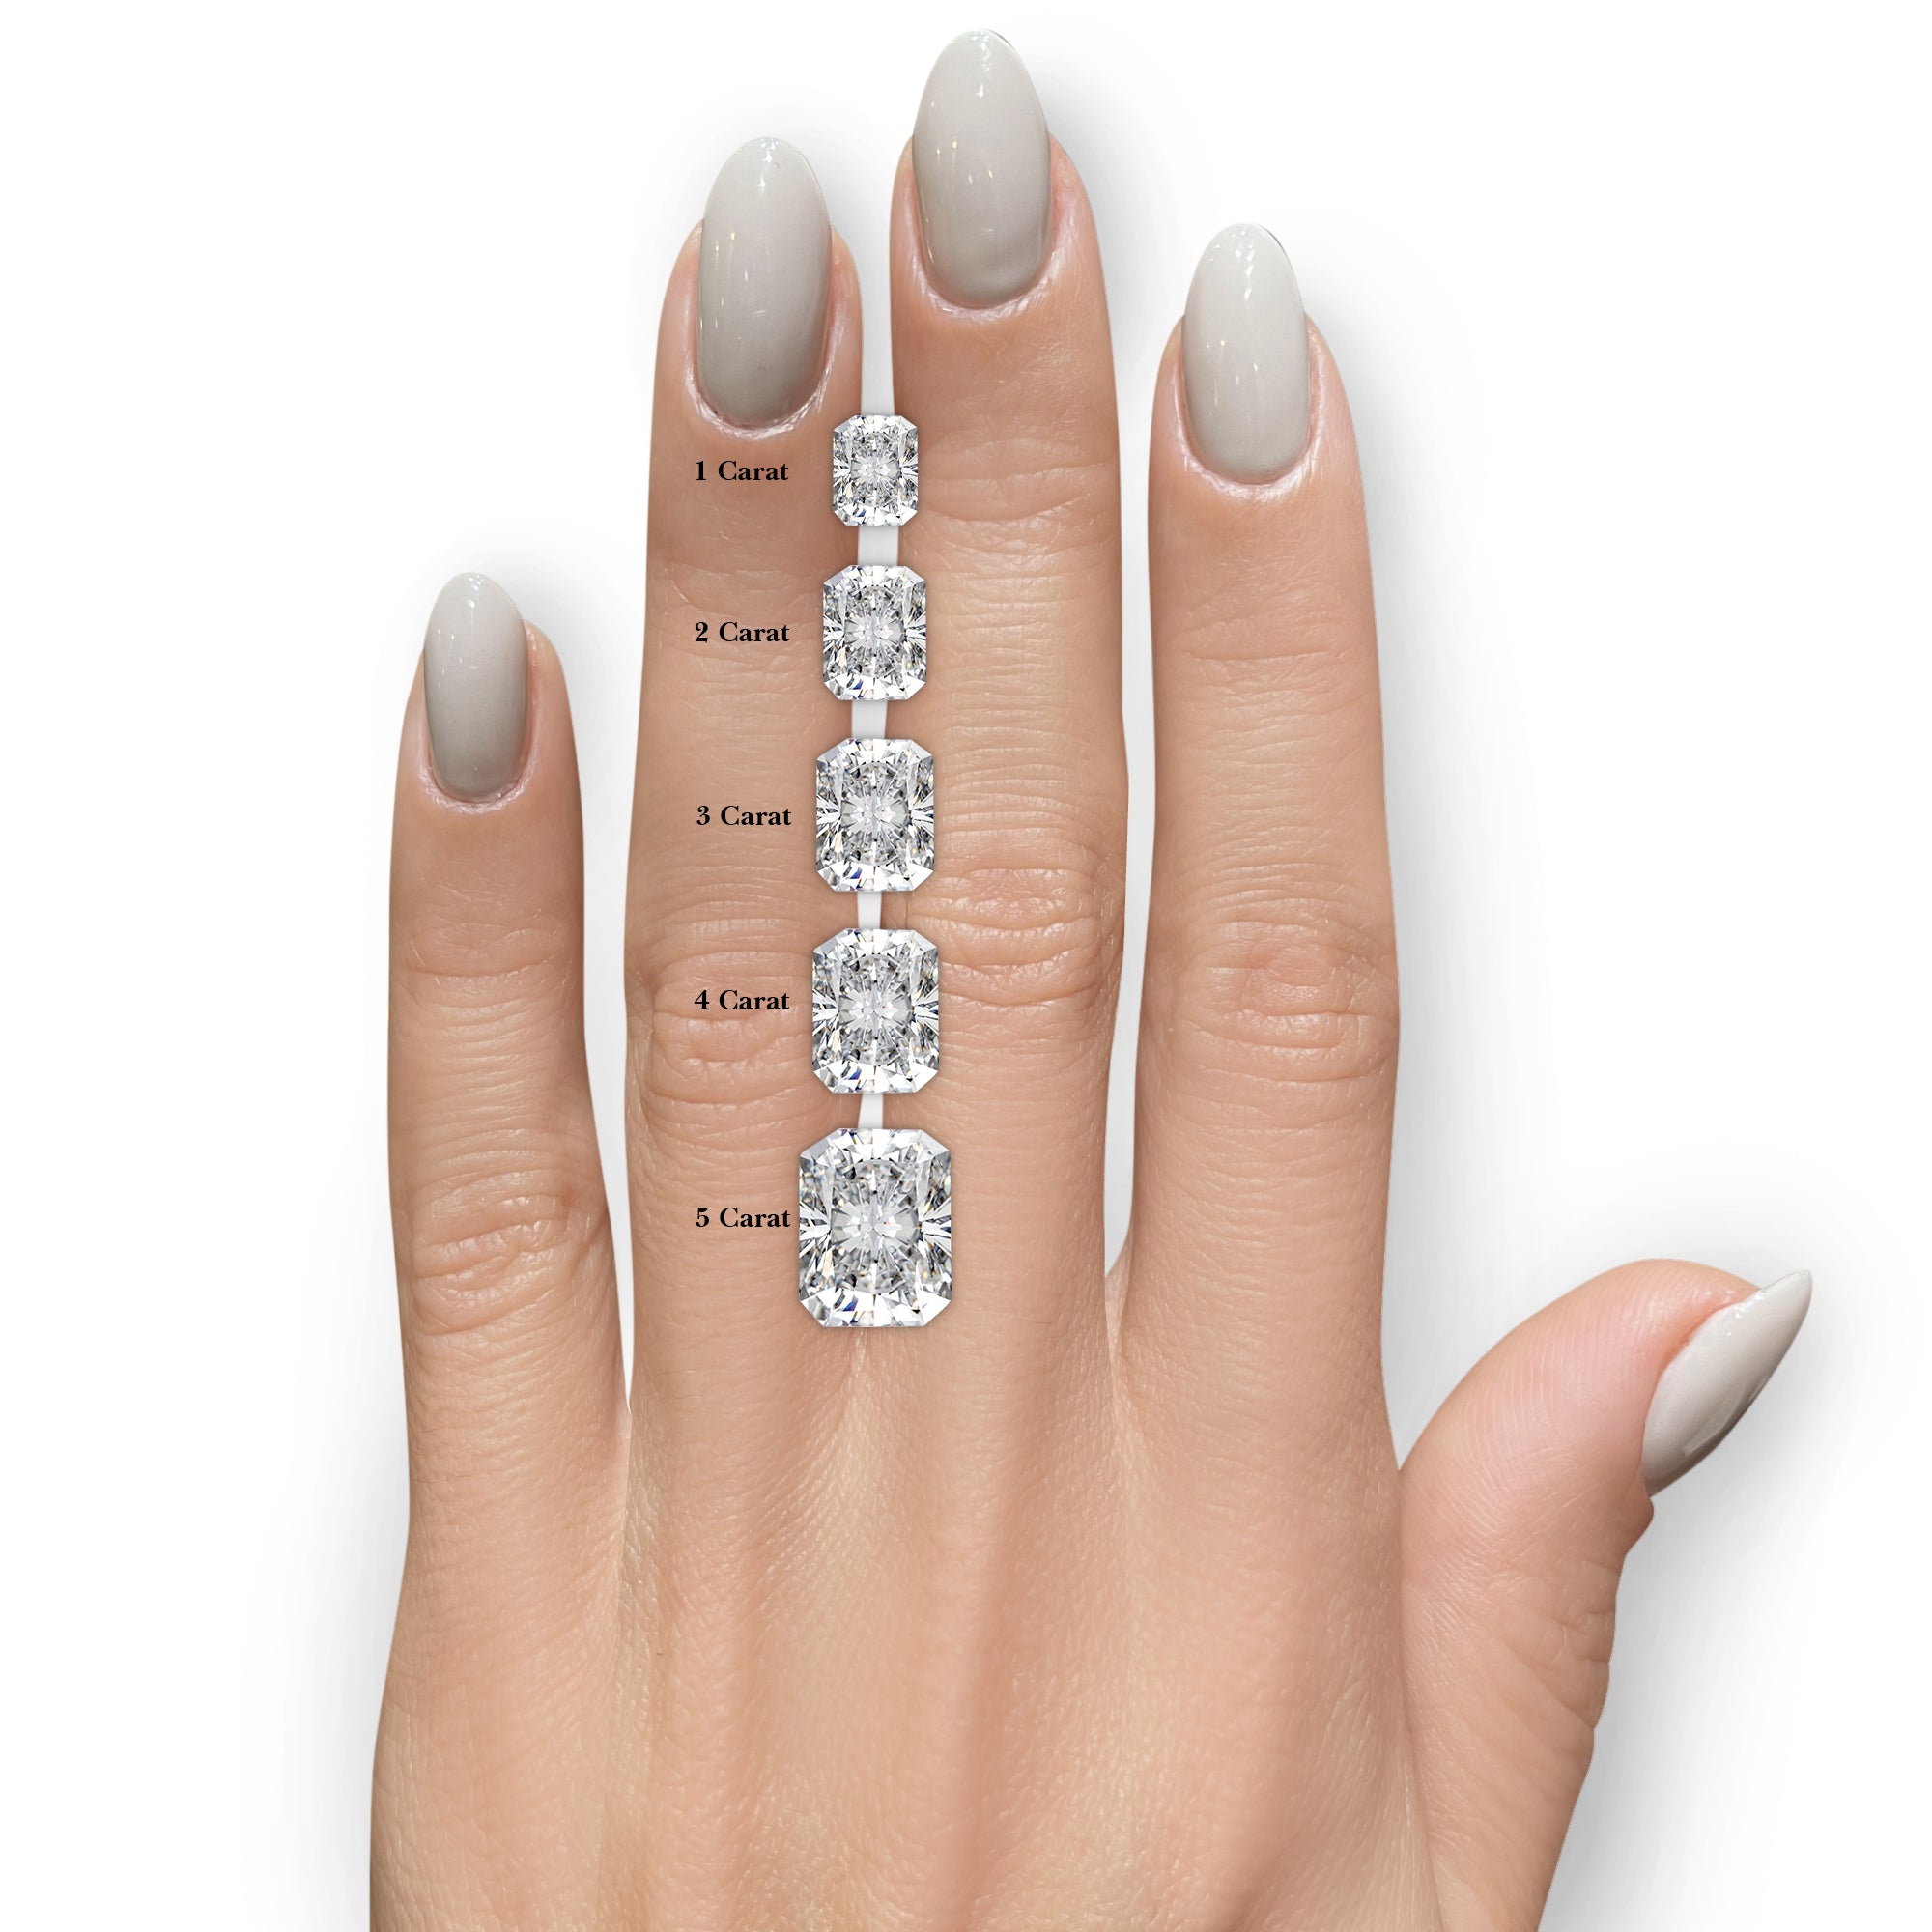 Andrea Diamond Engagement Ring -14K White Gold